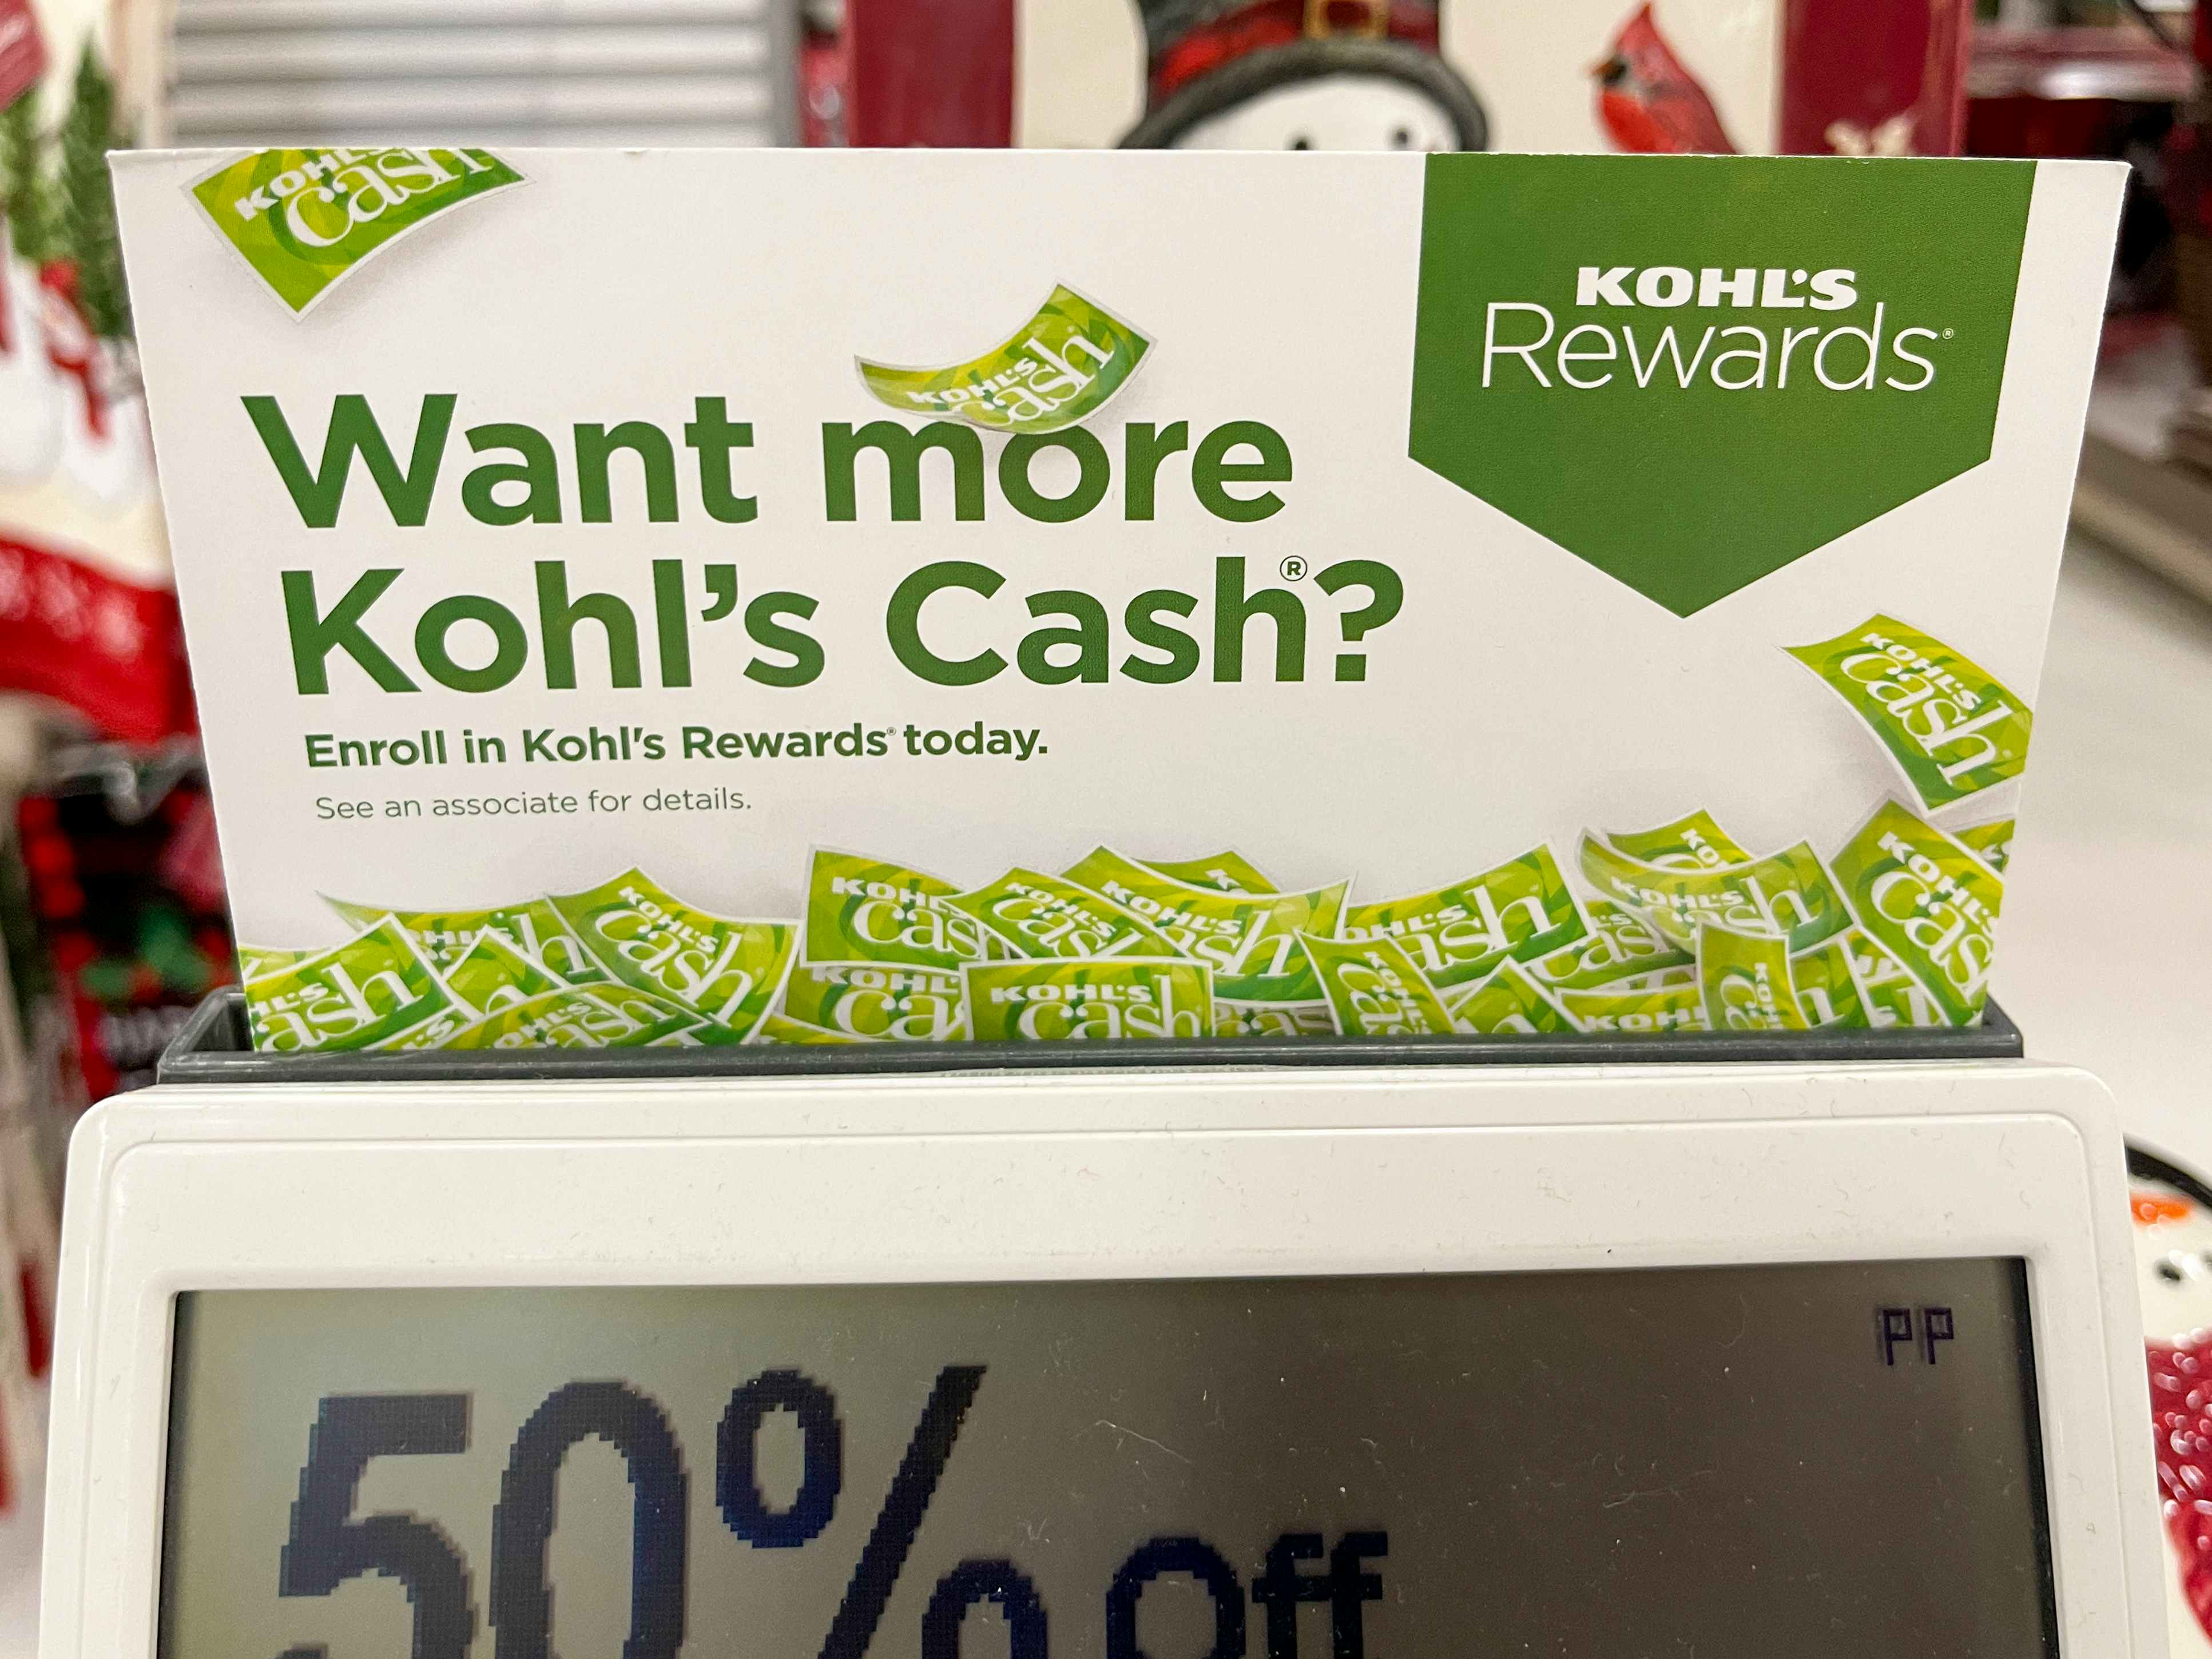 Kohls Credit Card Application - Kohl's Charge Card Review / Kohls Cash 